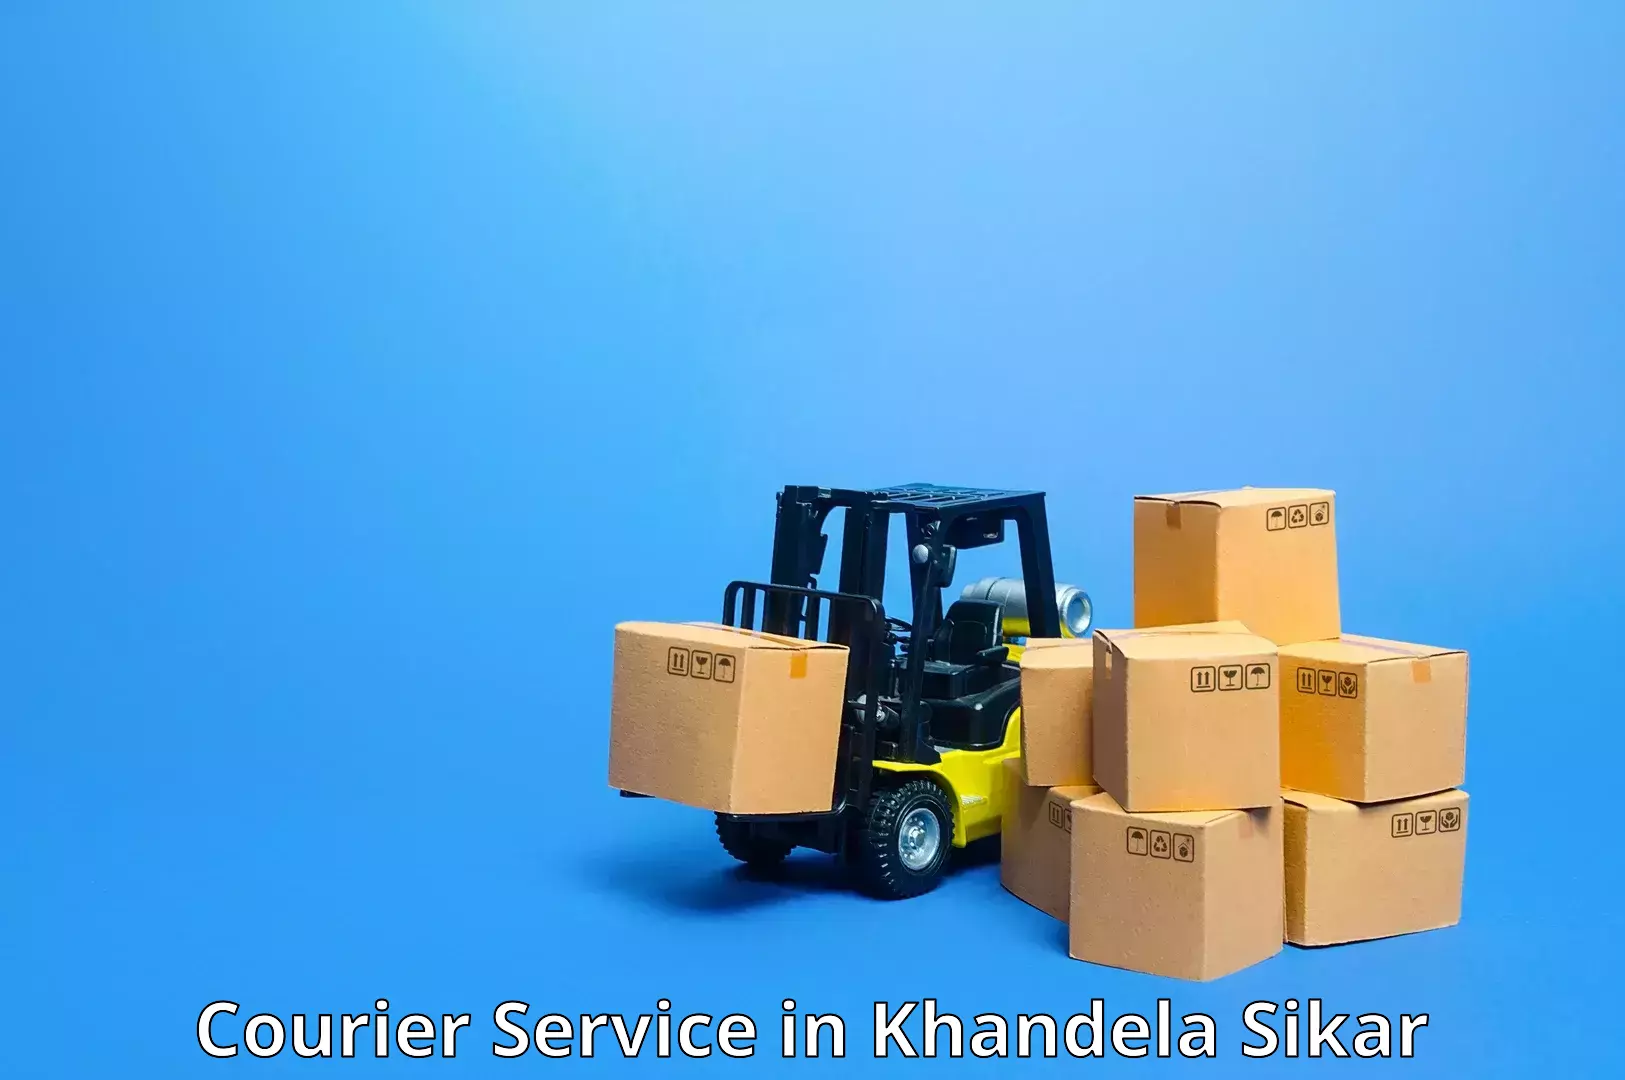 Nationwide parcel services in Khandela Sikar